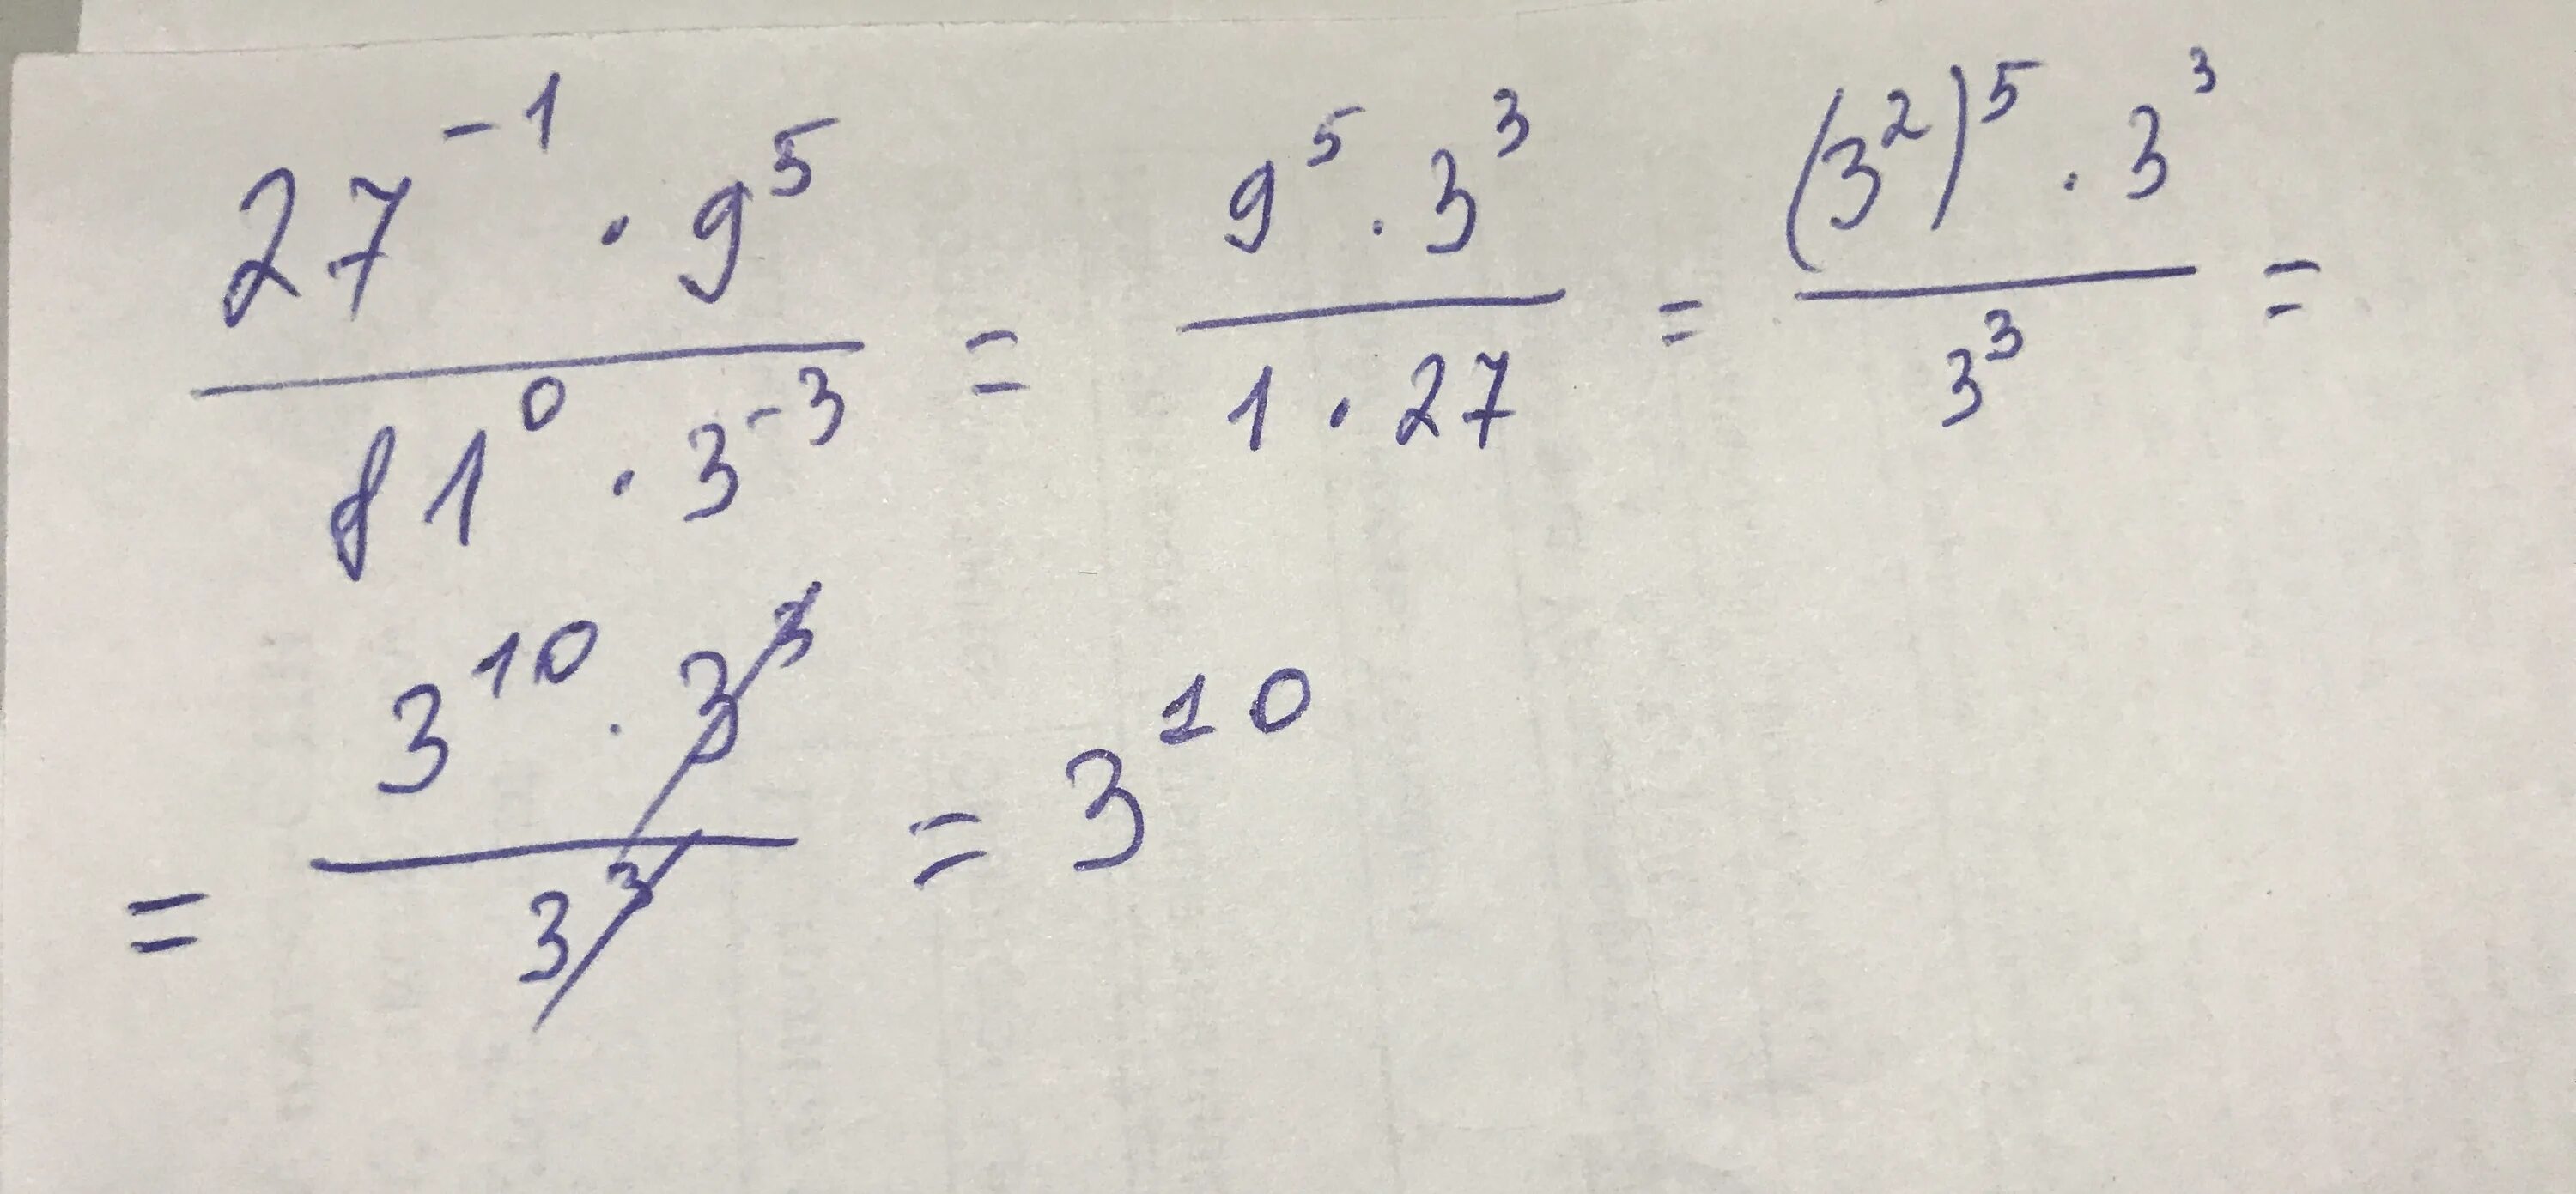 Запишите выражение 9-3 в виде степени числа 3. Запишет выражение в степени числа 3. 81 В степени 0,5. 81 Это 3 в степени.